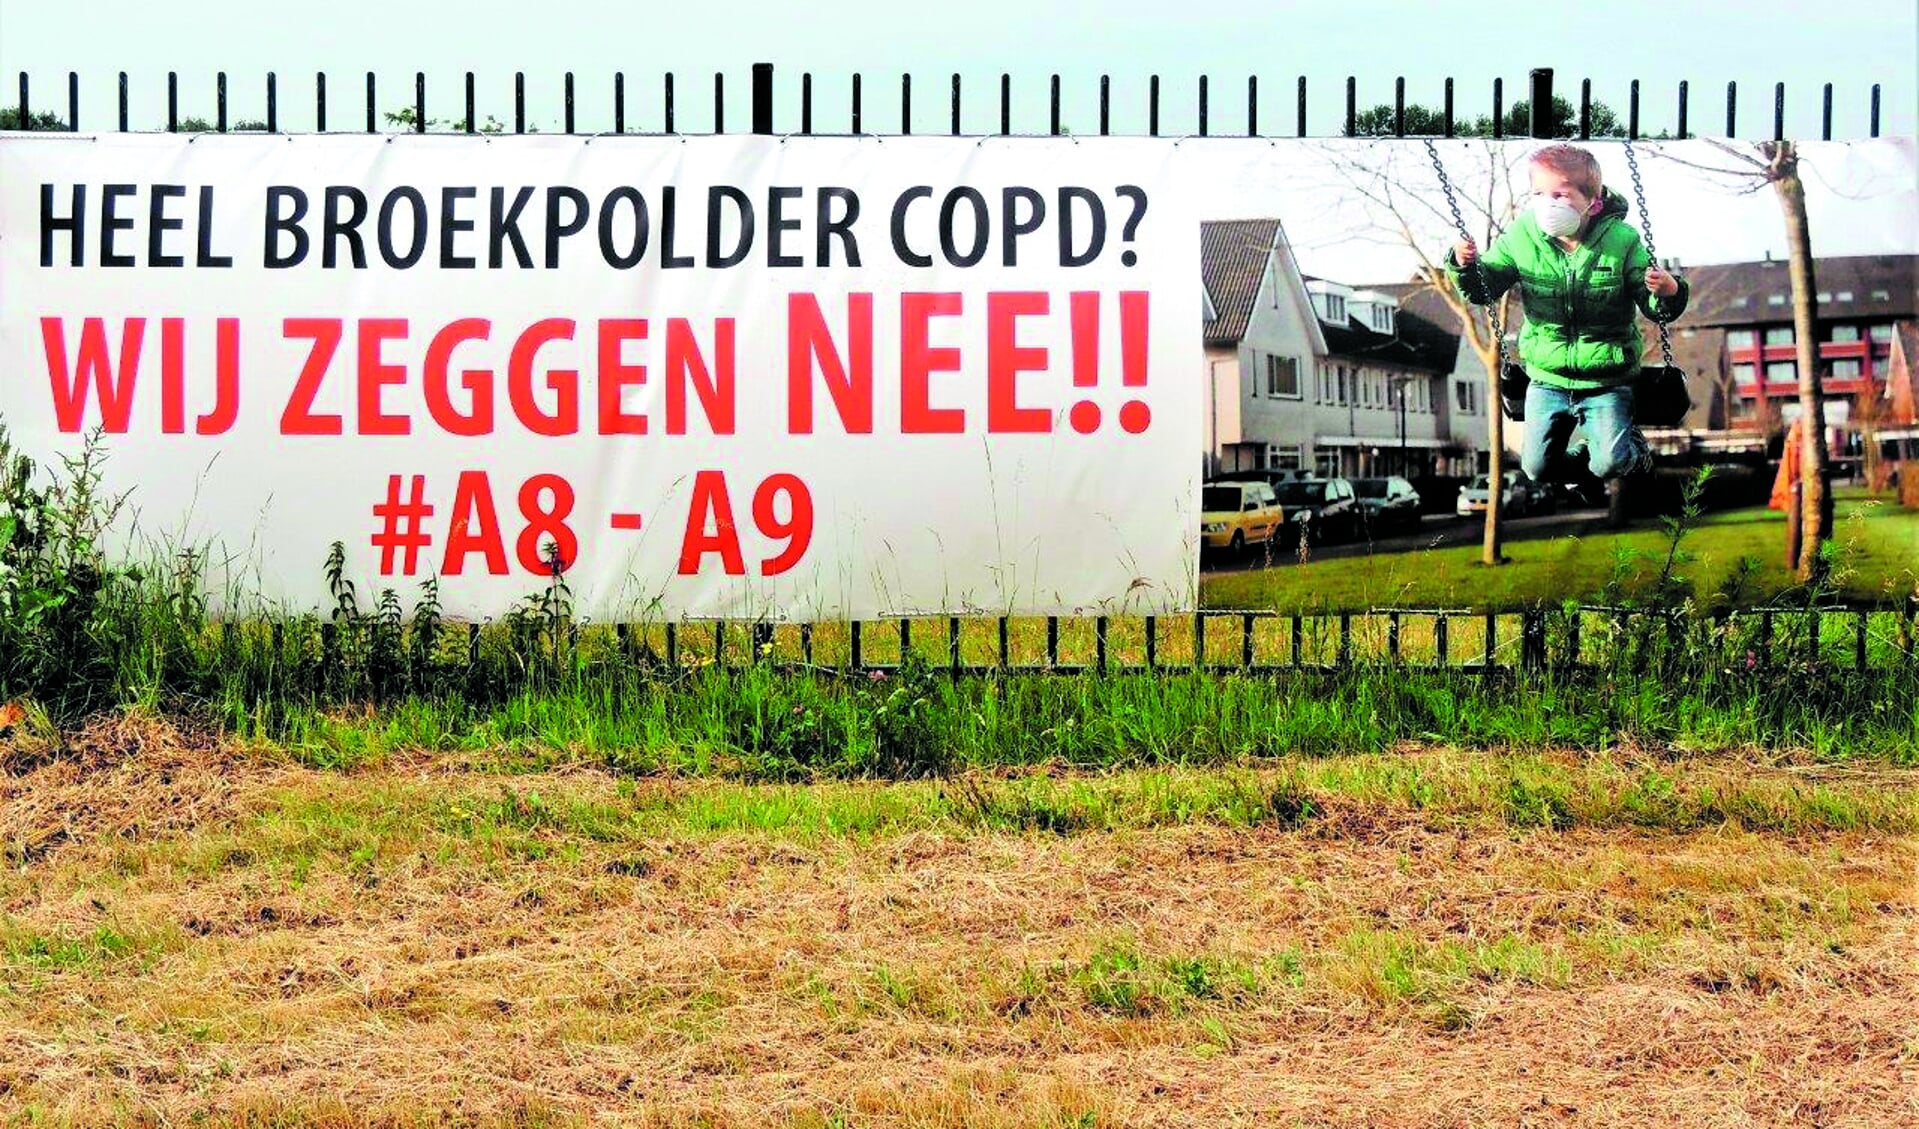 Bewoners van de Broekpolder willen daarentegen niets weten van de A8-A9.